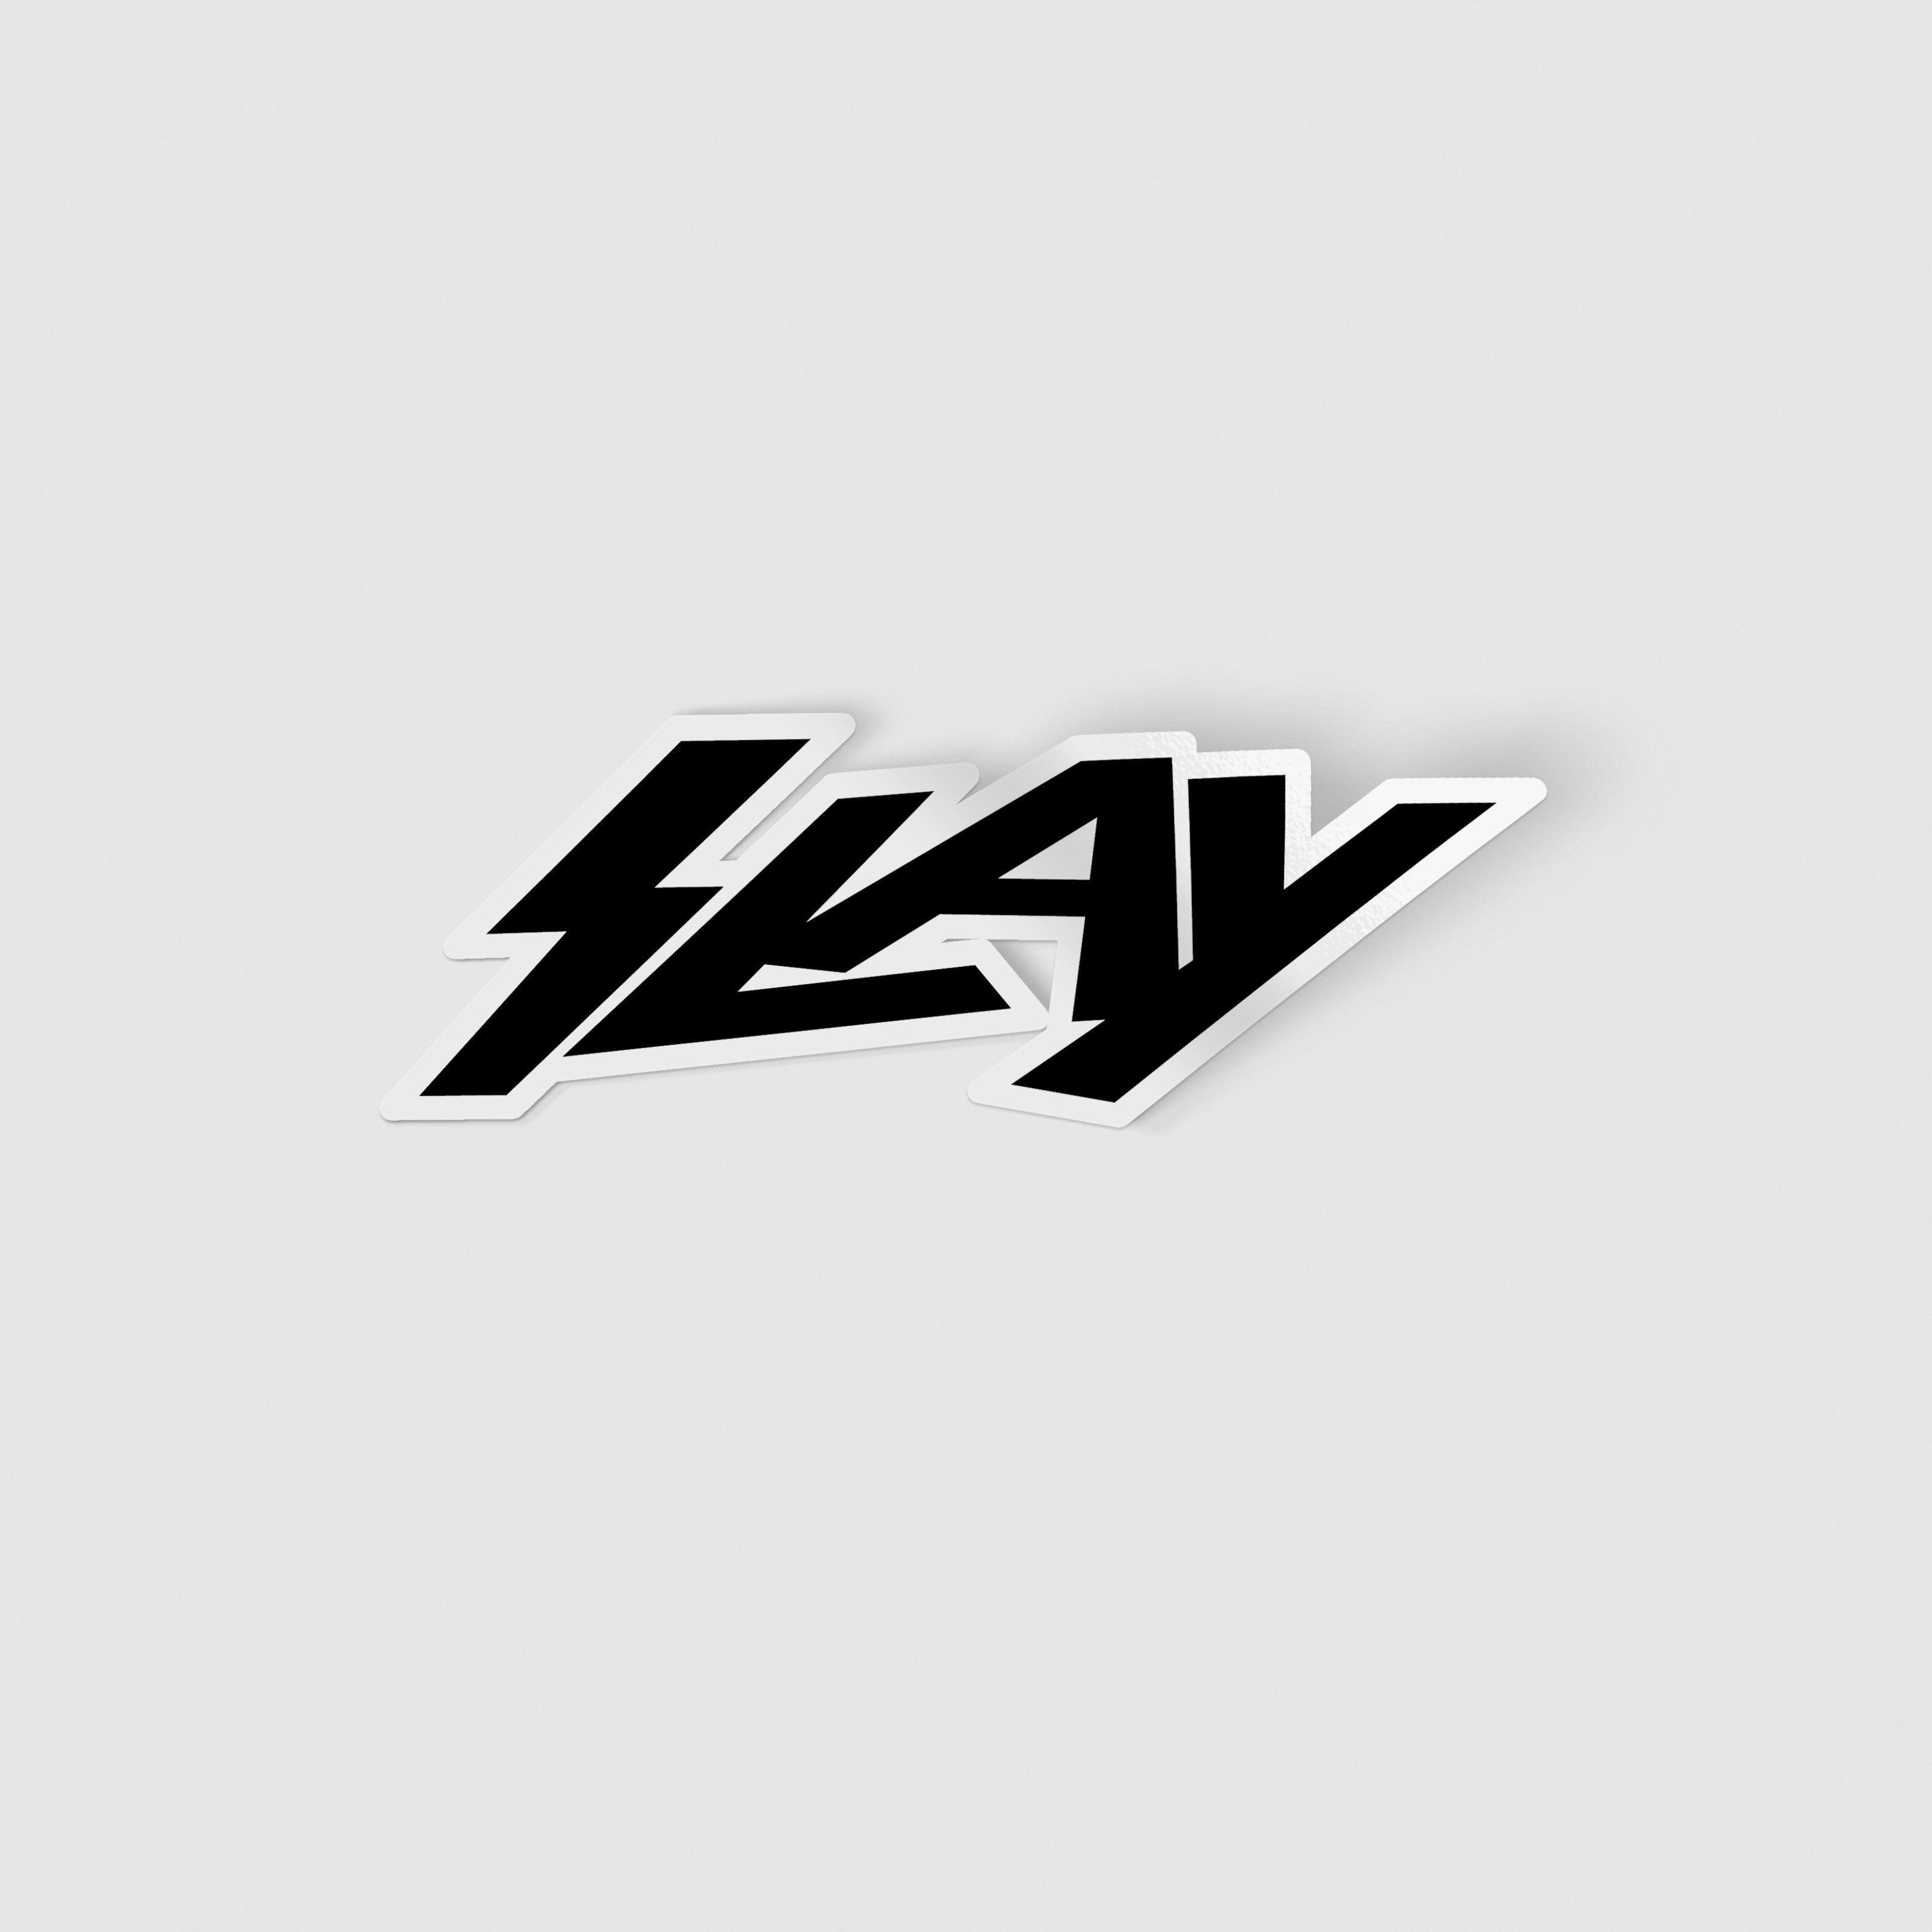 Slay Logo - Slay Slay Stickers. STICKER INSPO. Stickers, Slay